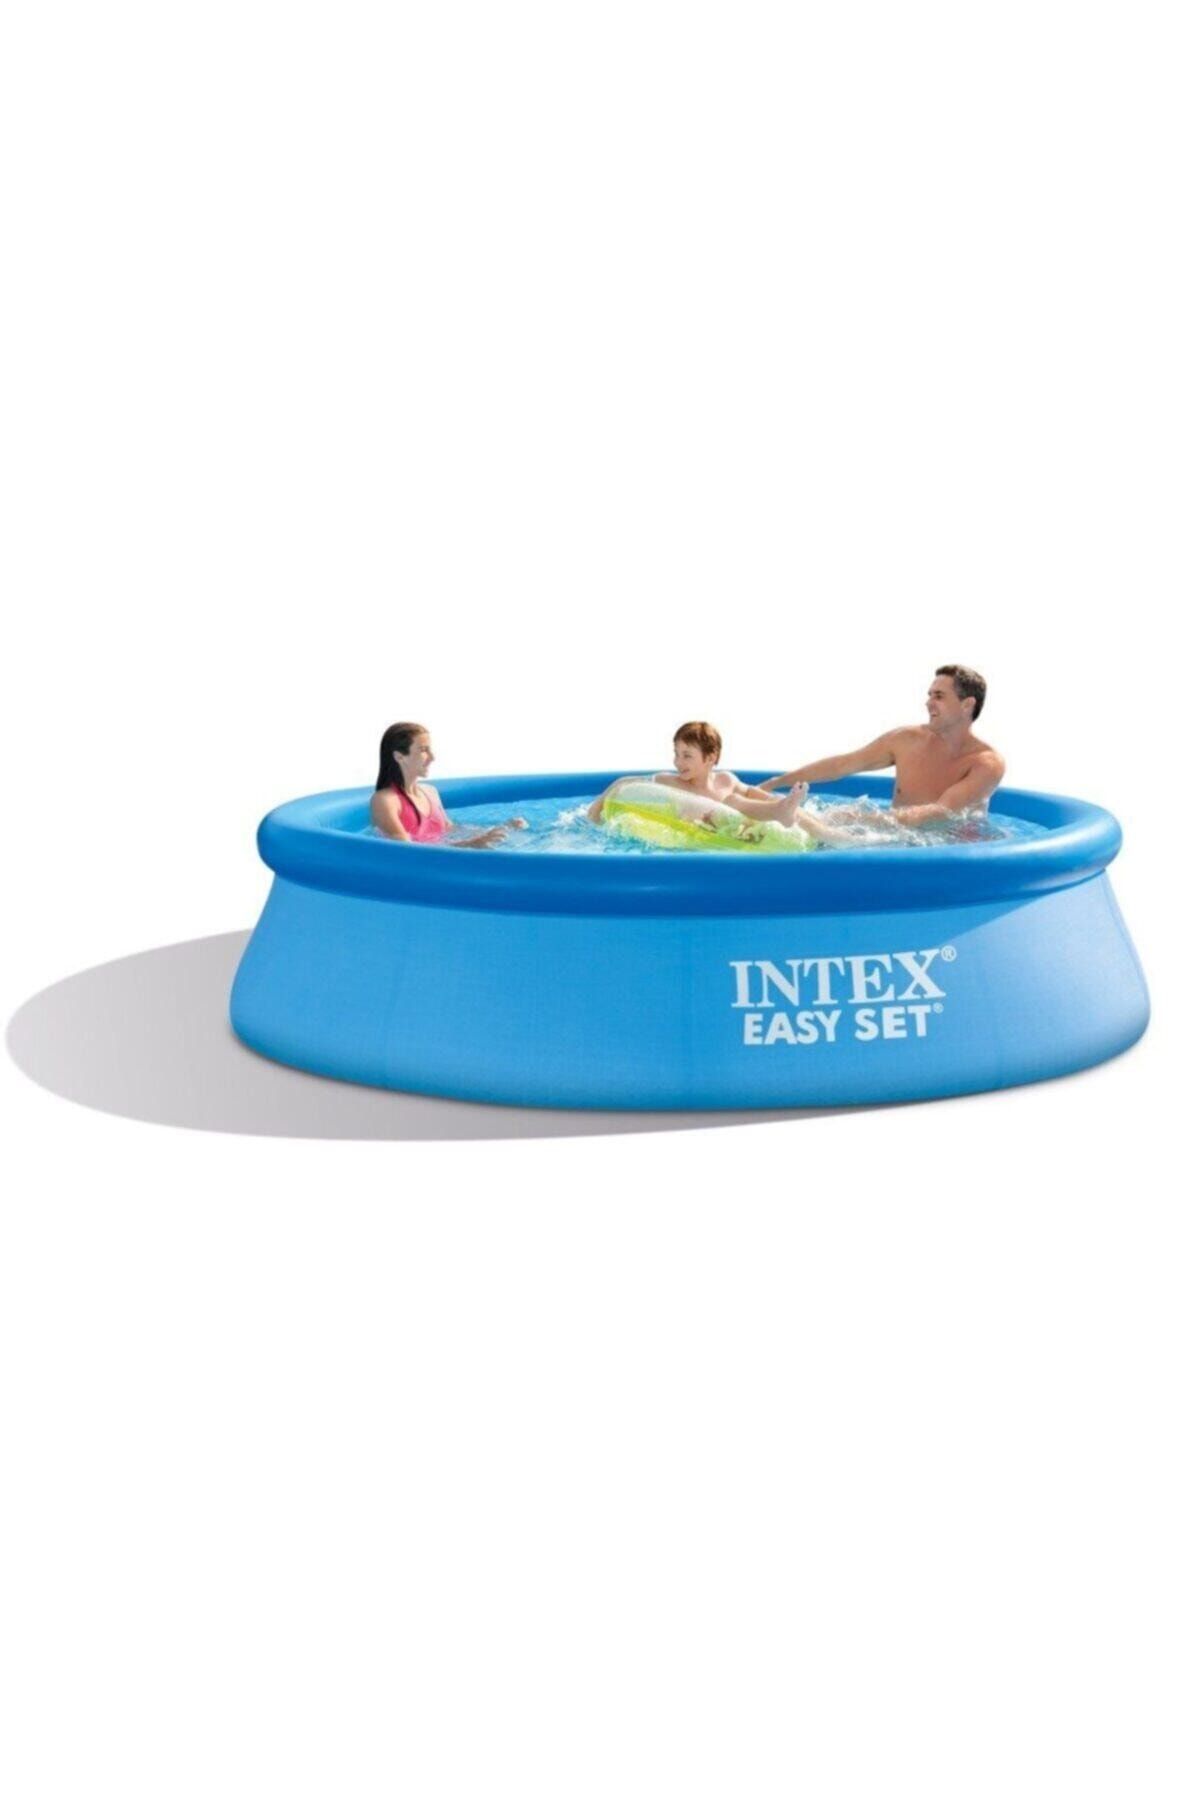 Intex Easy Mavi Renk Kolay Kurulum Şişme Havuz, 305x76cm, Büyük Boy Aile Havuzu -28120